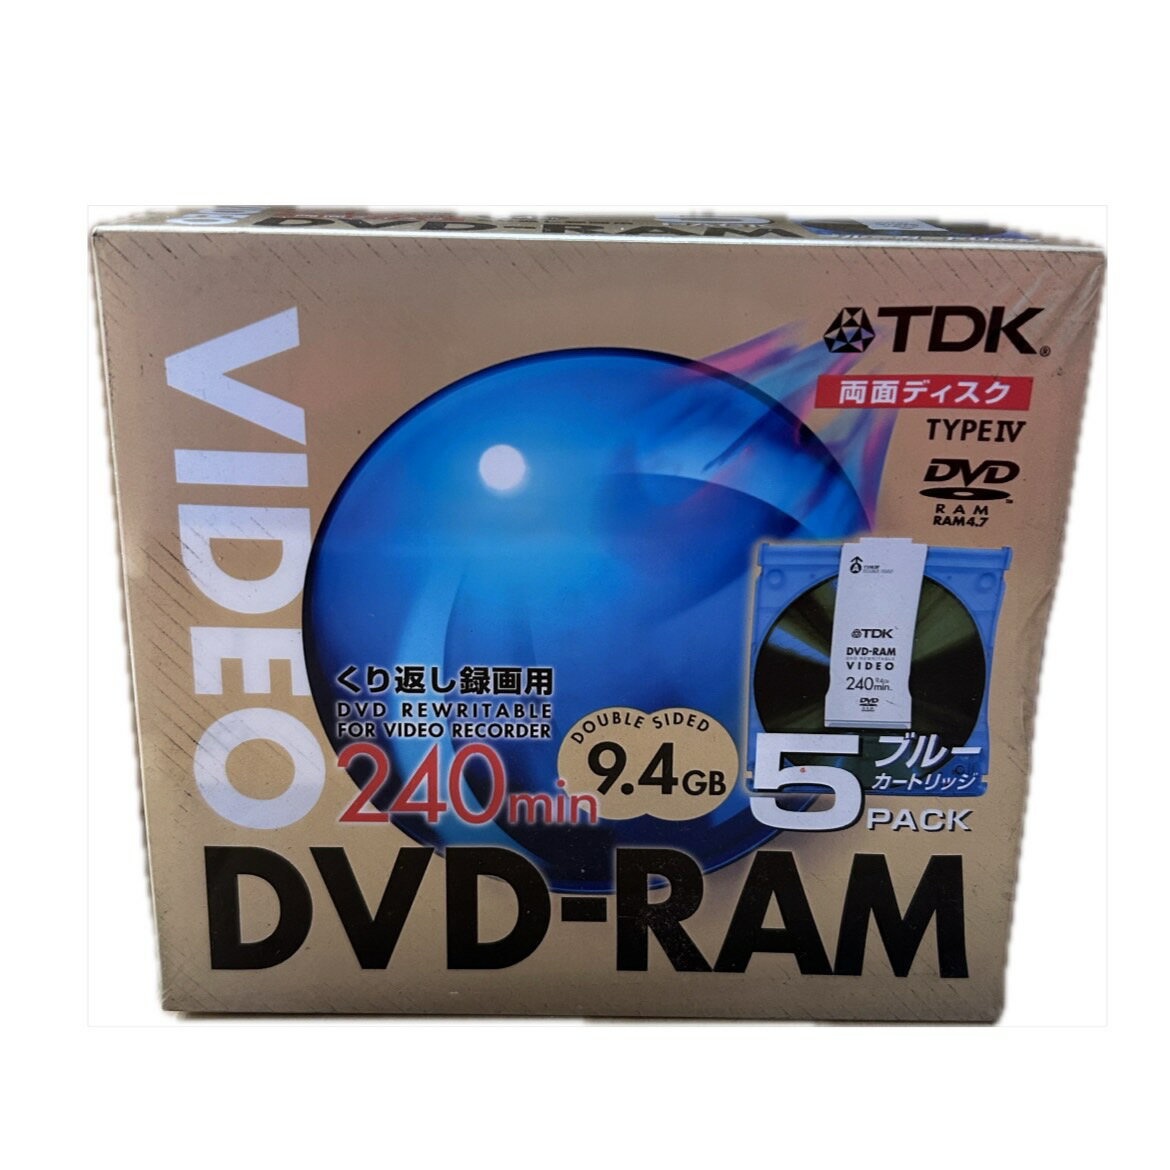  訳ありDVD-RAM 9.4GB くり返し録画用 240min 5枚入り 両面ディスク ブルーカートリッジ